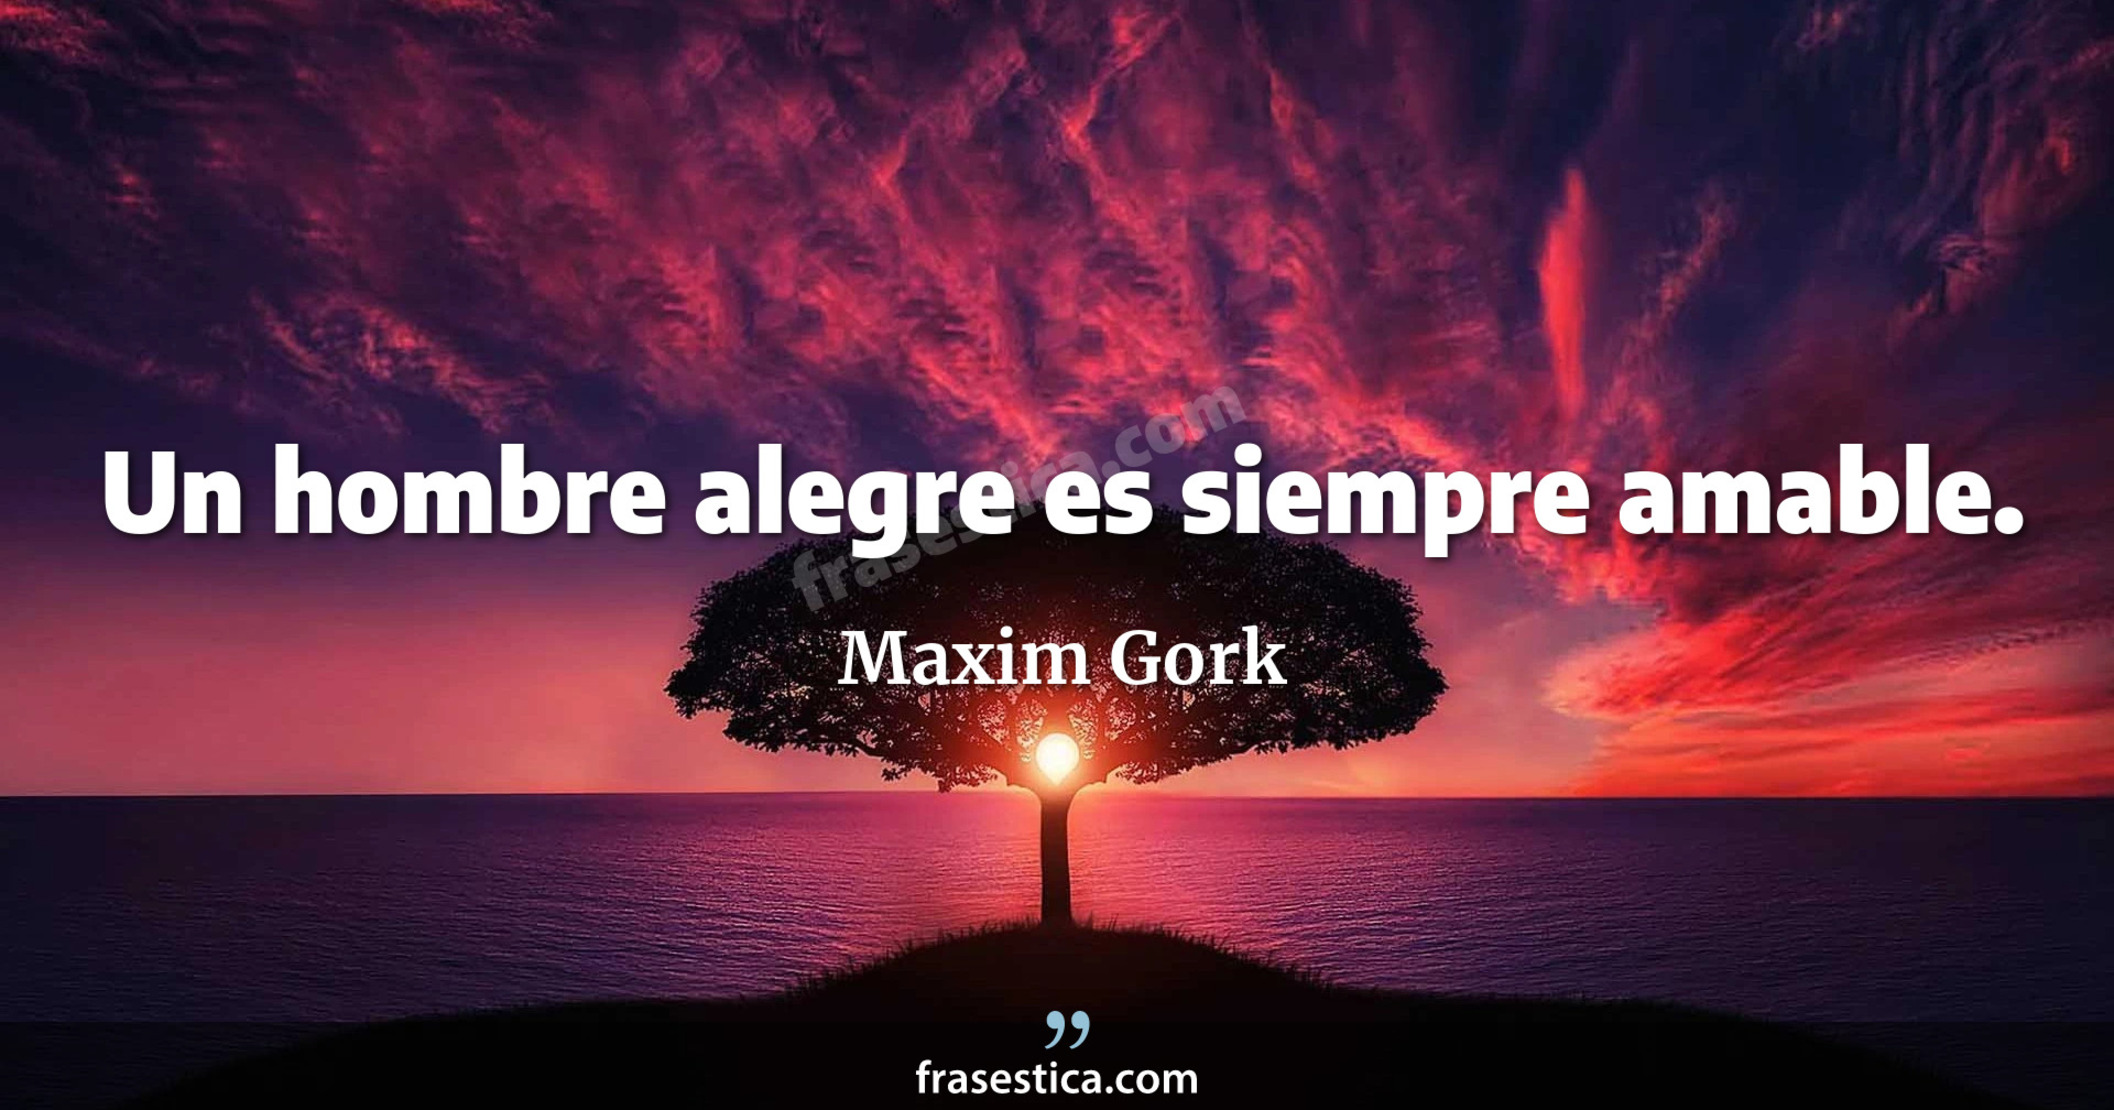 Un hombre alegre es siempre amable. - Maxim Gork